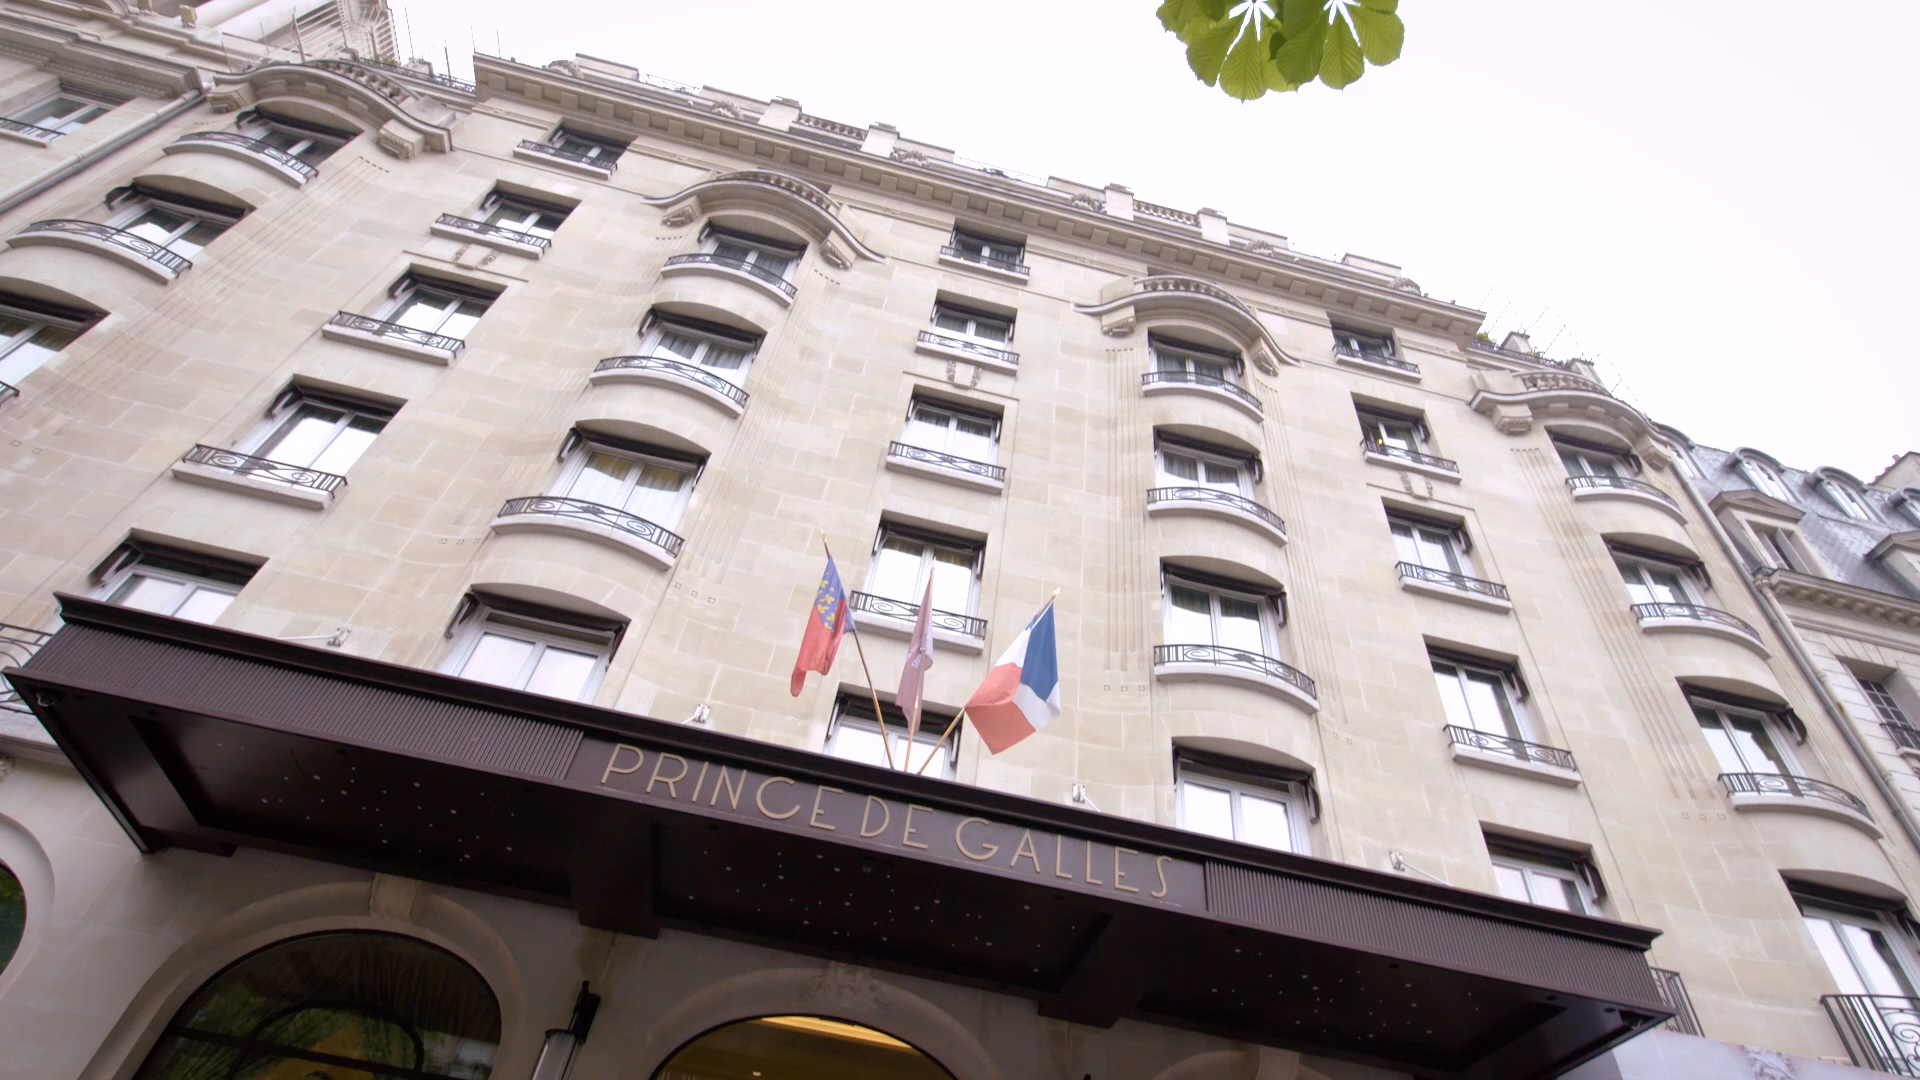 Eingang des Hotels Prince de Galles in Paris